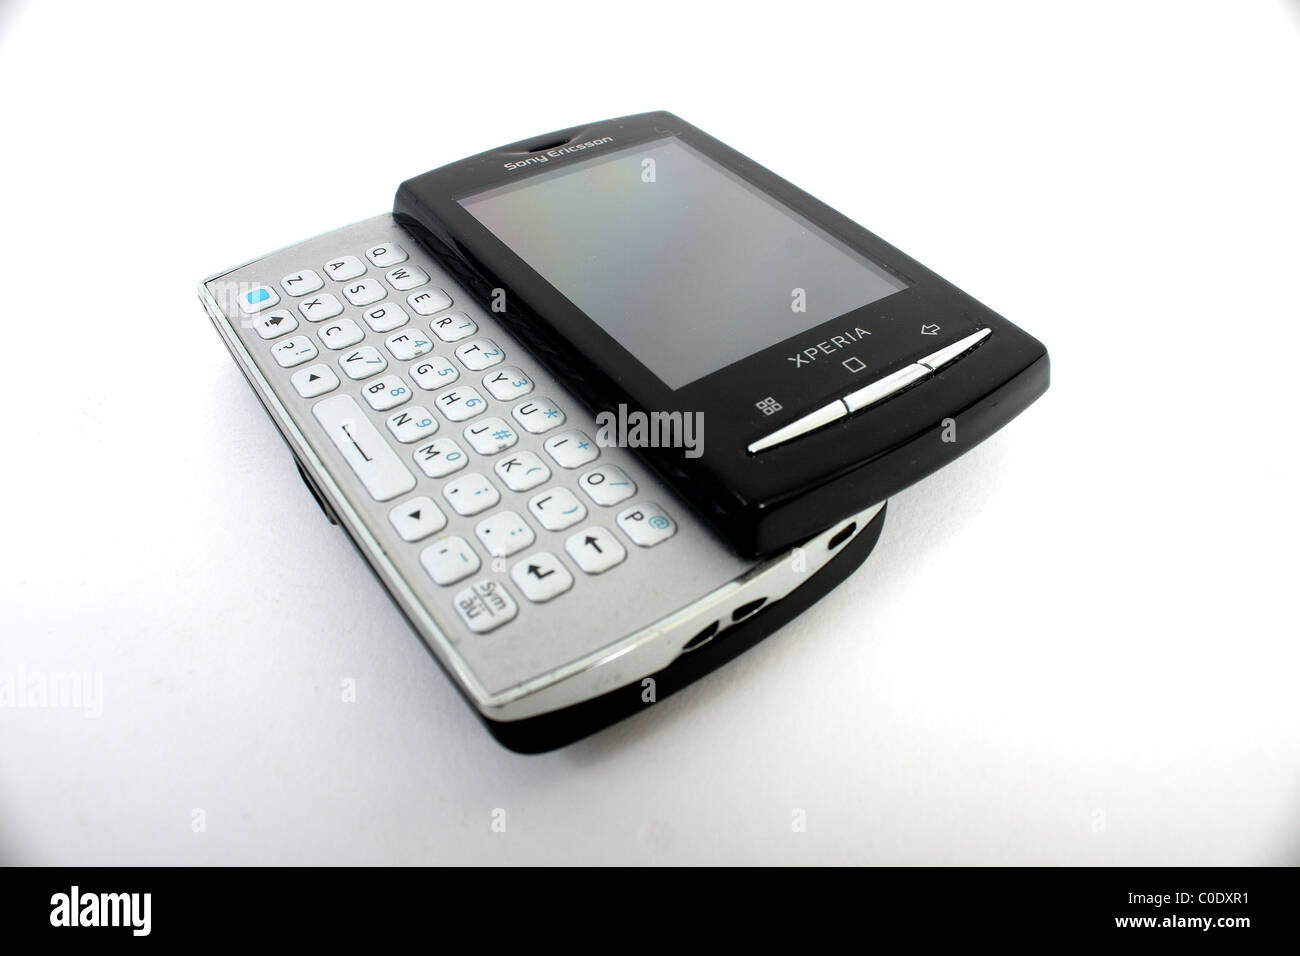 Le nouveau Xperia X10 Mini Pro par téléphone mobile Sony Ericsson. Un  téléphone pour les affaires ou le plaisir avec un clavier QWERTY coulissant  Photo Stock - Alamy